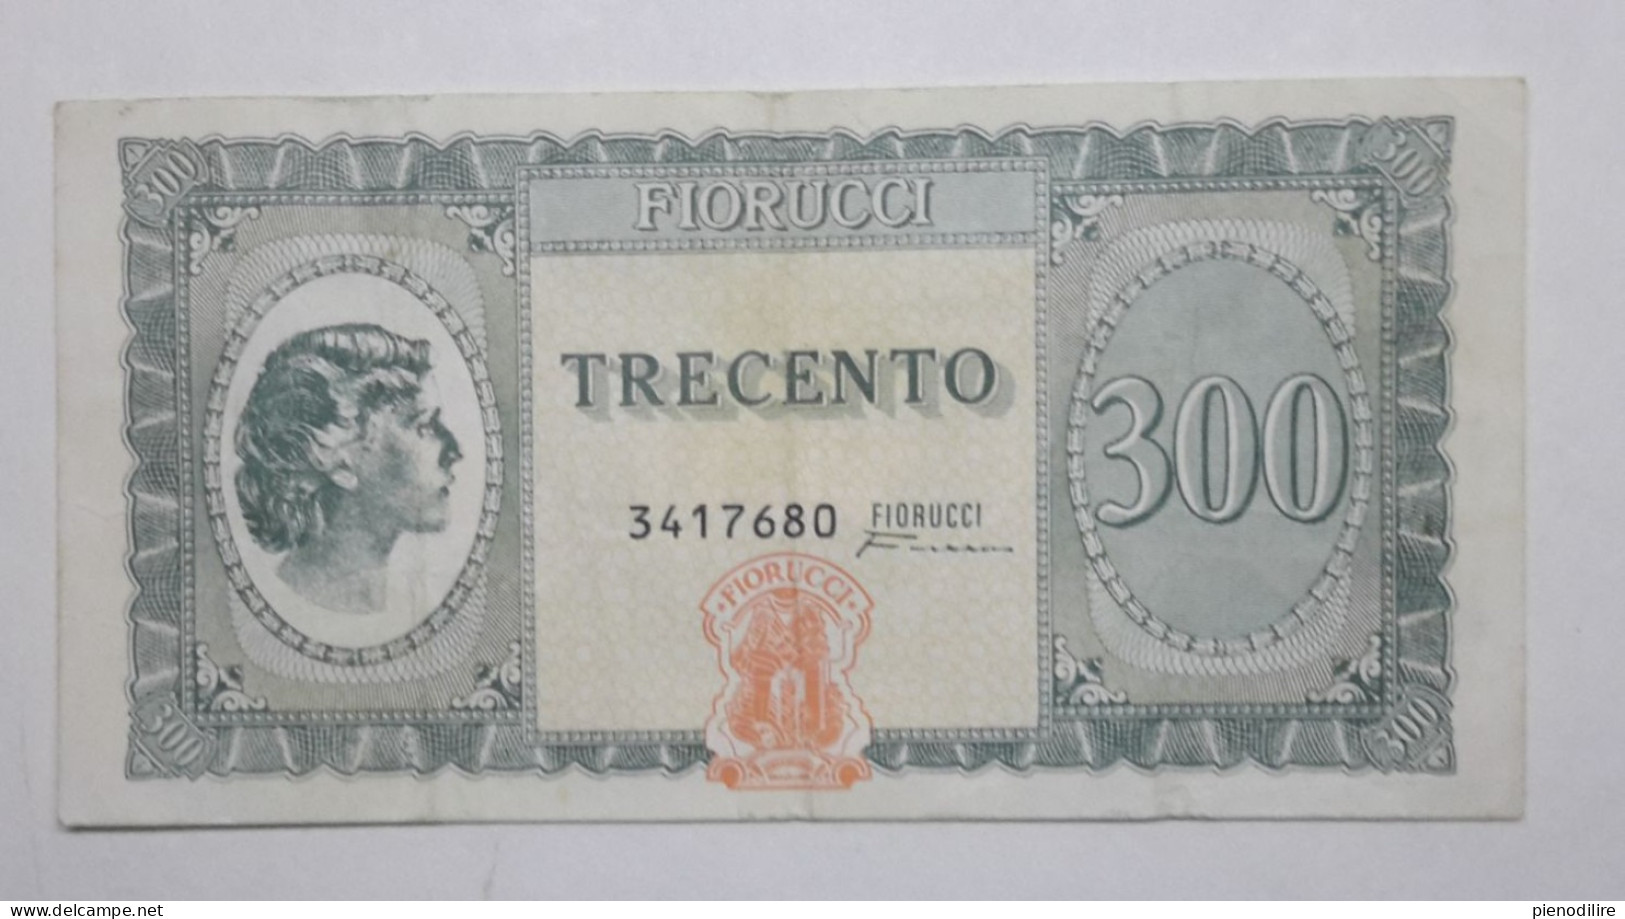 BANCONOTA BUONO D' ACQUISTO DA 300 LIRE FIORUCCI (A.8) - [10] Cheques En Mini-cheques